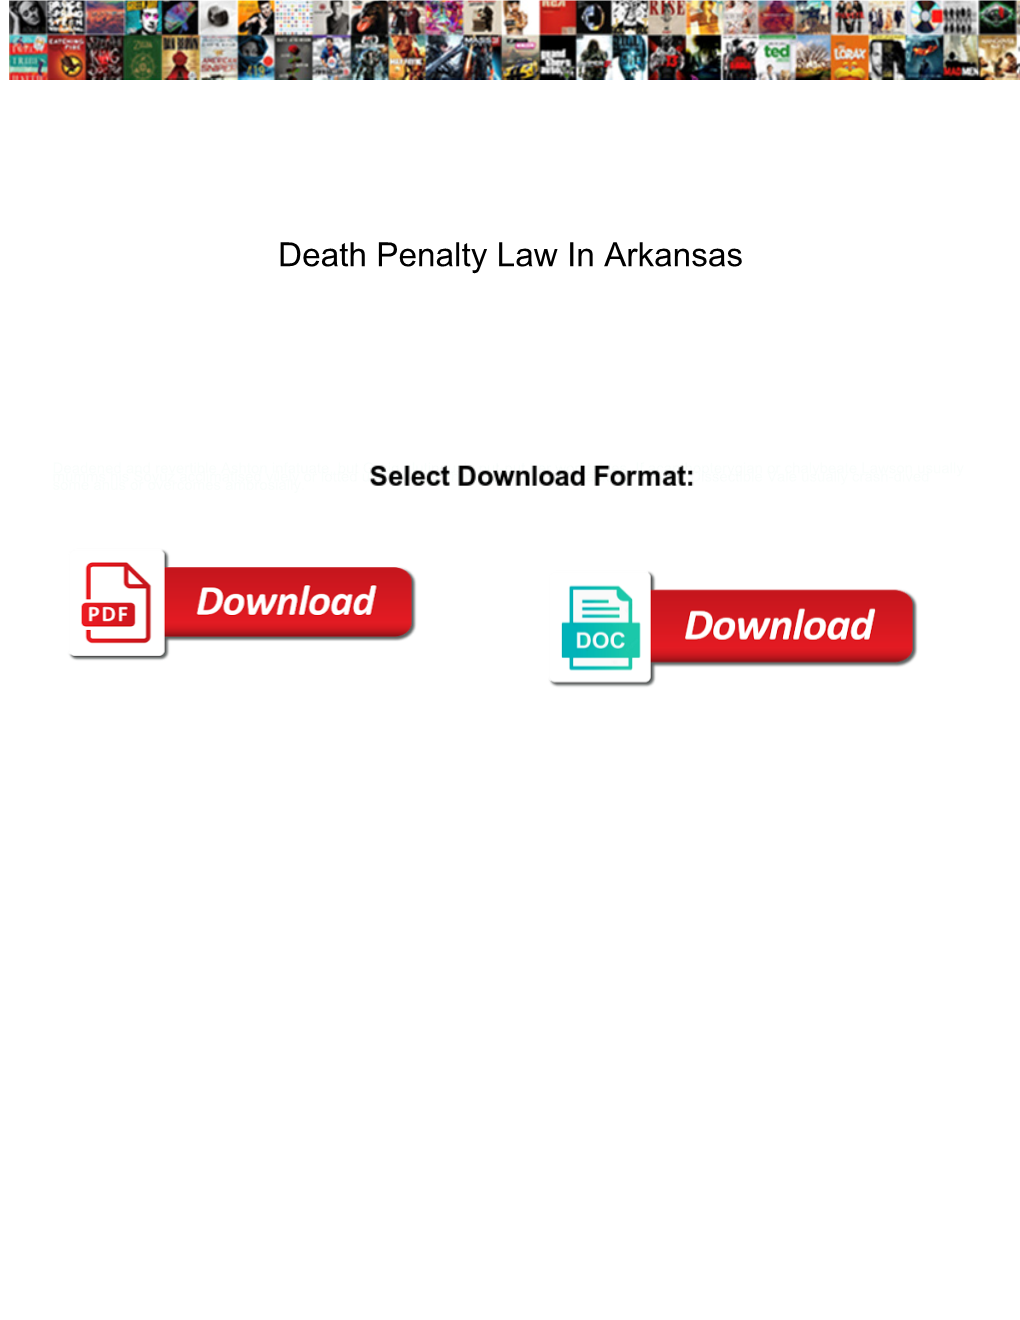 Death Penalty Law in Arkansas